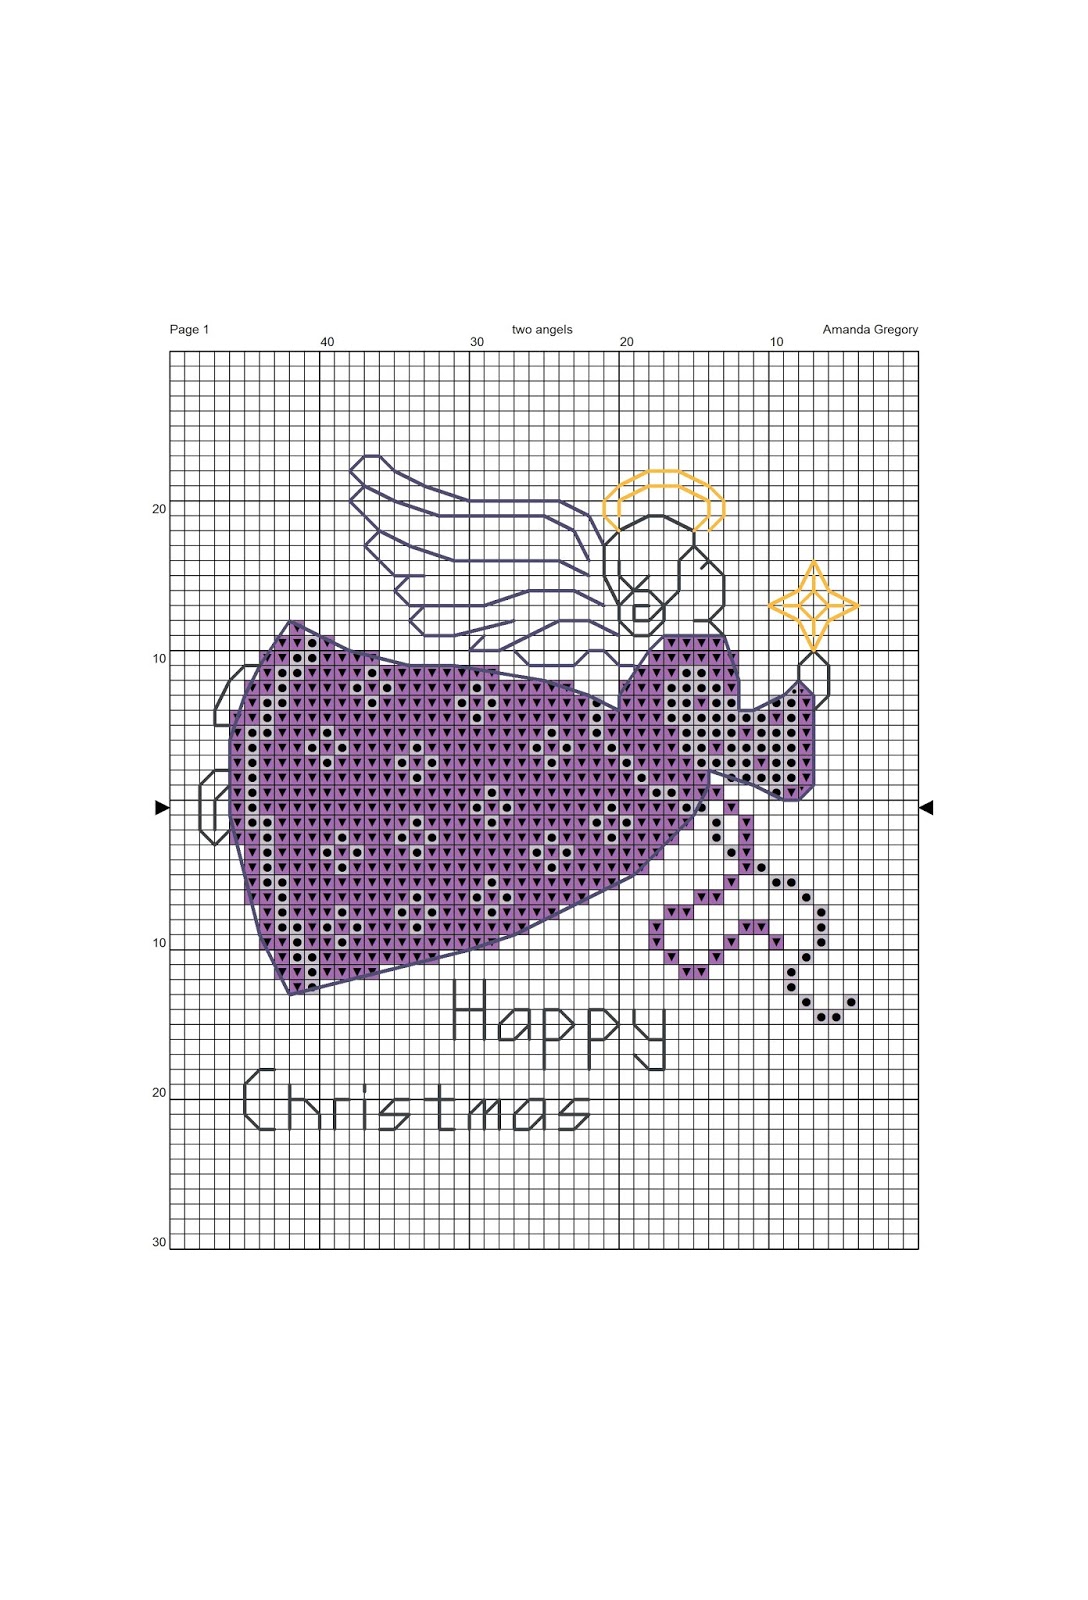 Free Christmas Cross Stitch Charts